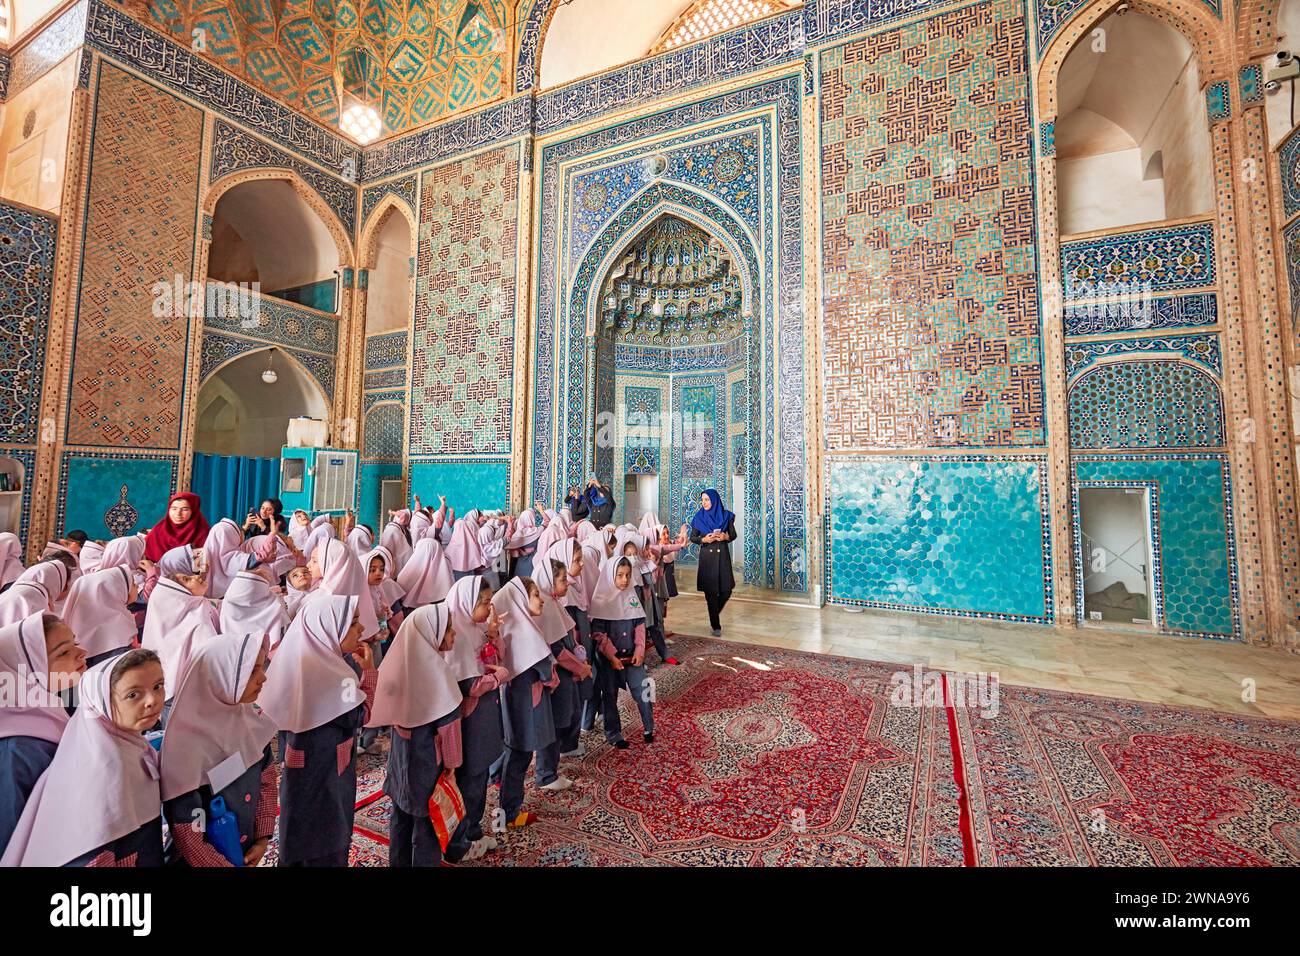 Petites écolières iraniennes en uniforme scolaire avec des hijabs roses à l'intérieur de la mosquée Jameh de Yazd, mosquée chiite du XIVe siècle dans la vieille ville de Yazd, Iran. Banque D'Images